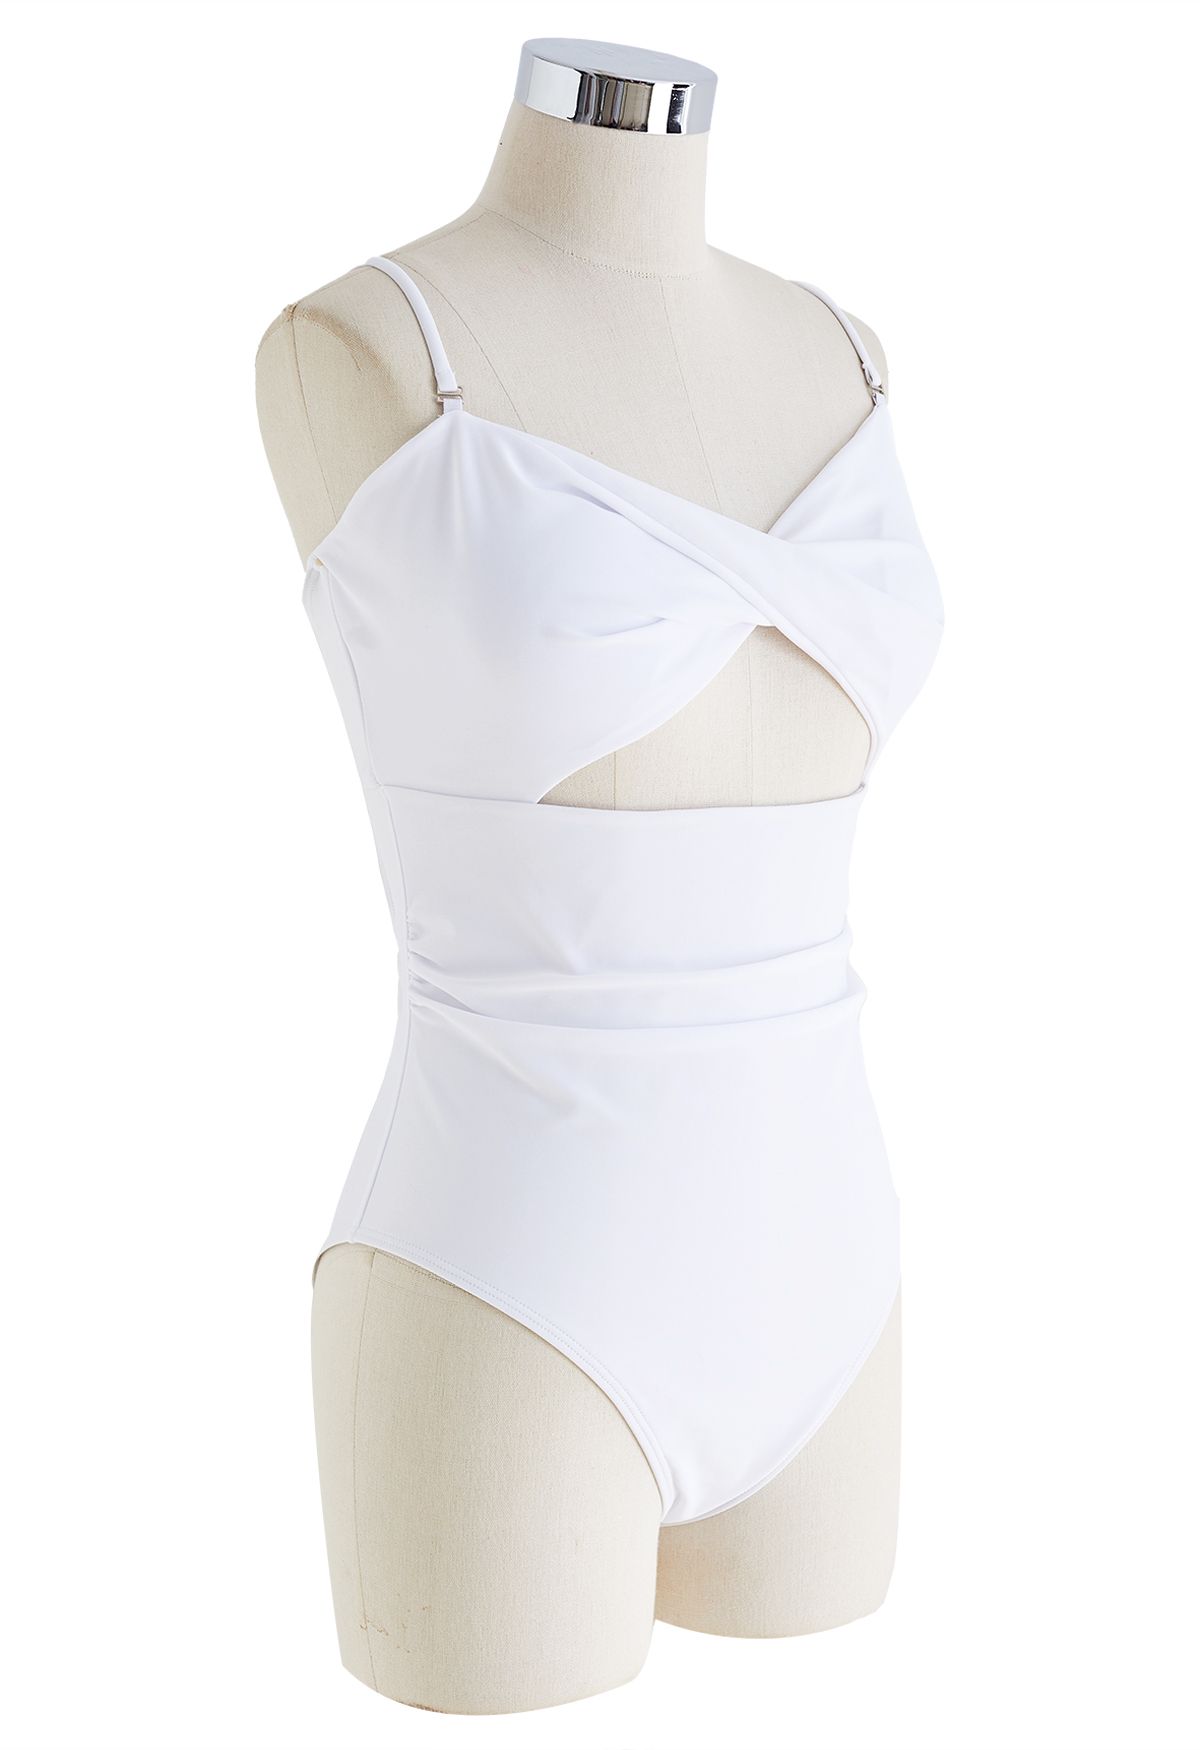 ملابس السباحة الملتوية ذات الفتحات الأمامية باللون الأبيض